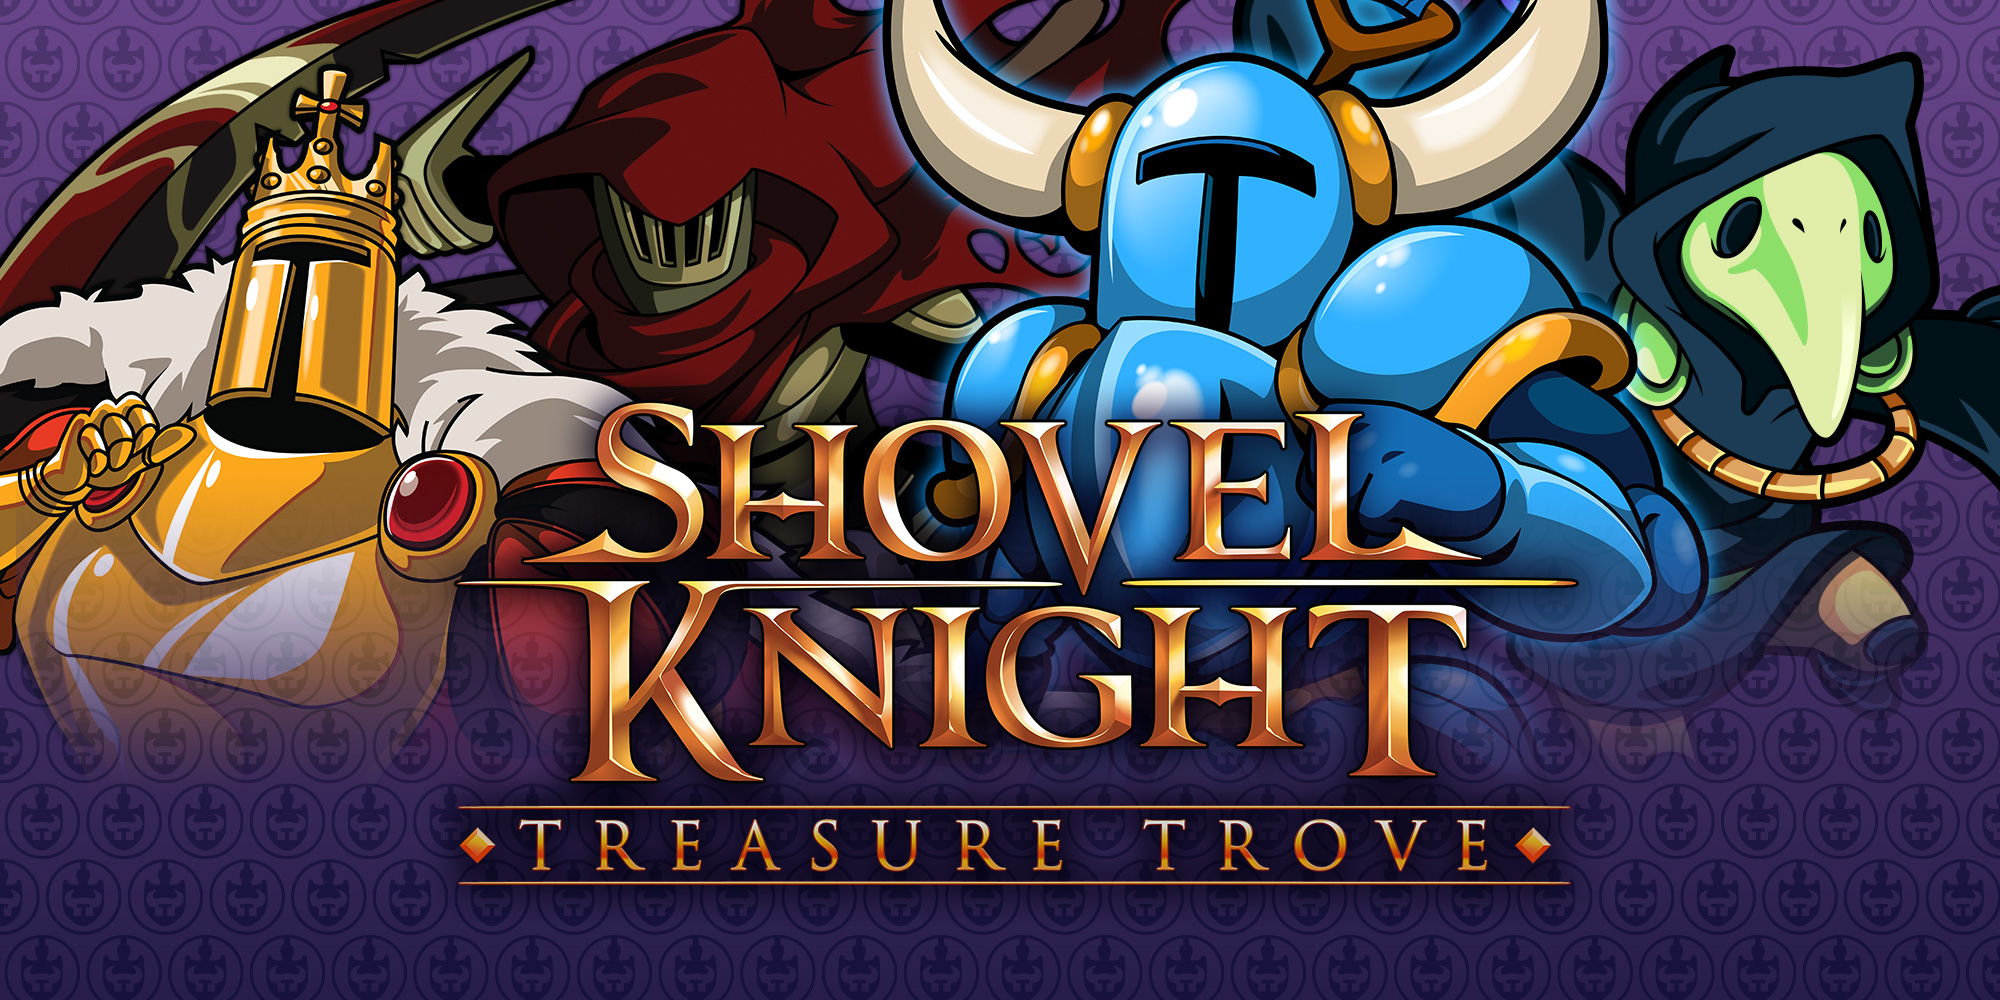 3ds shovel knight treasure trove